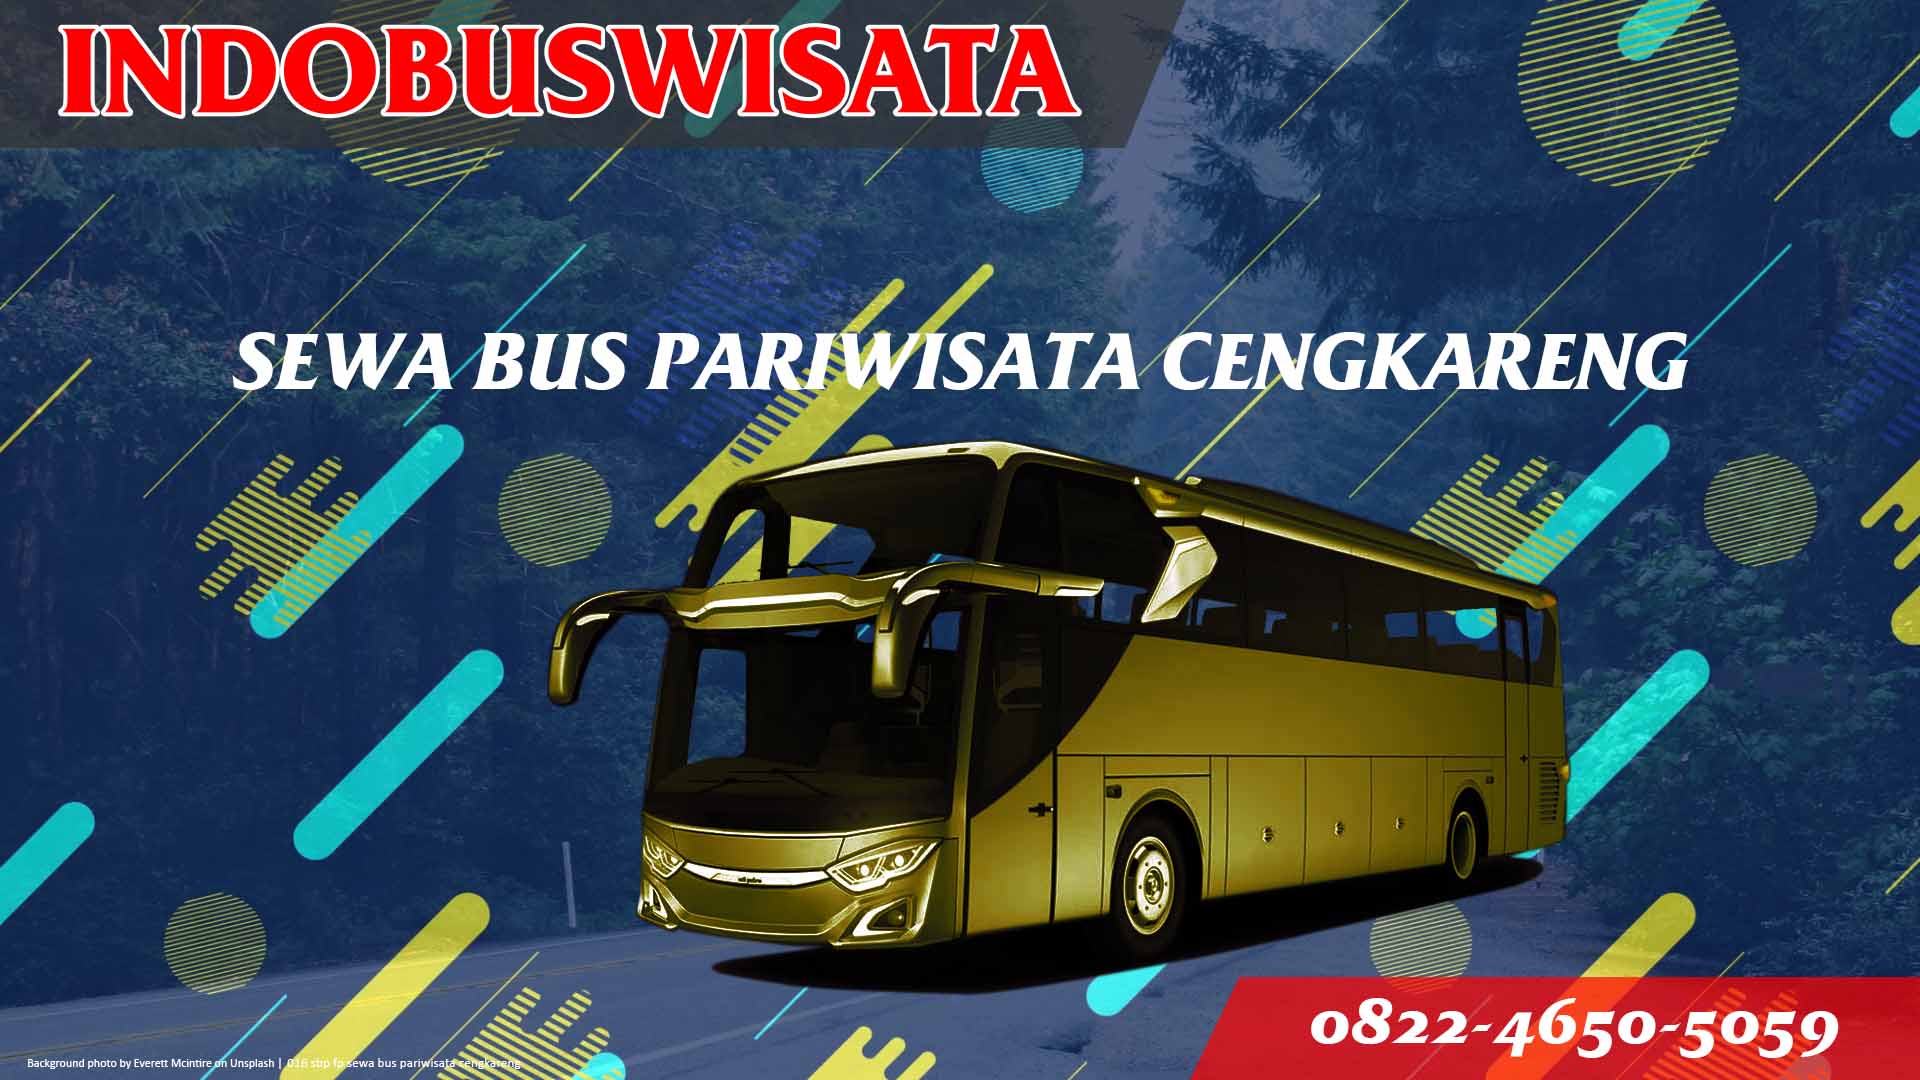 016 Sbp Fp Sewa Bus Pariwisata Cengkareng Indobuswisata